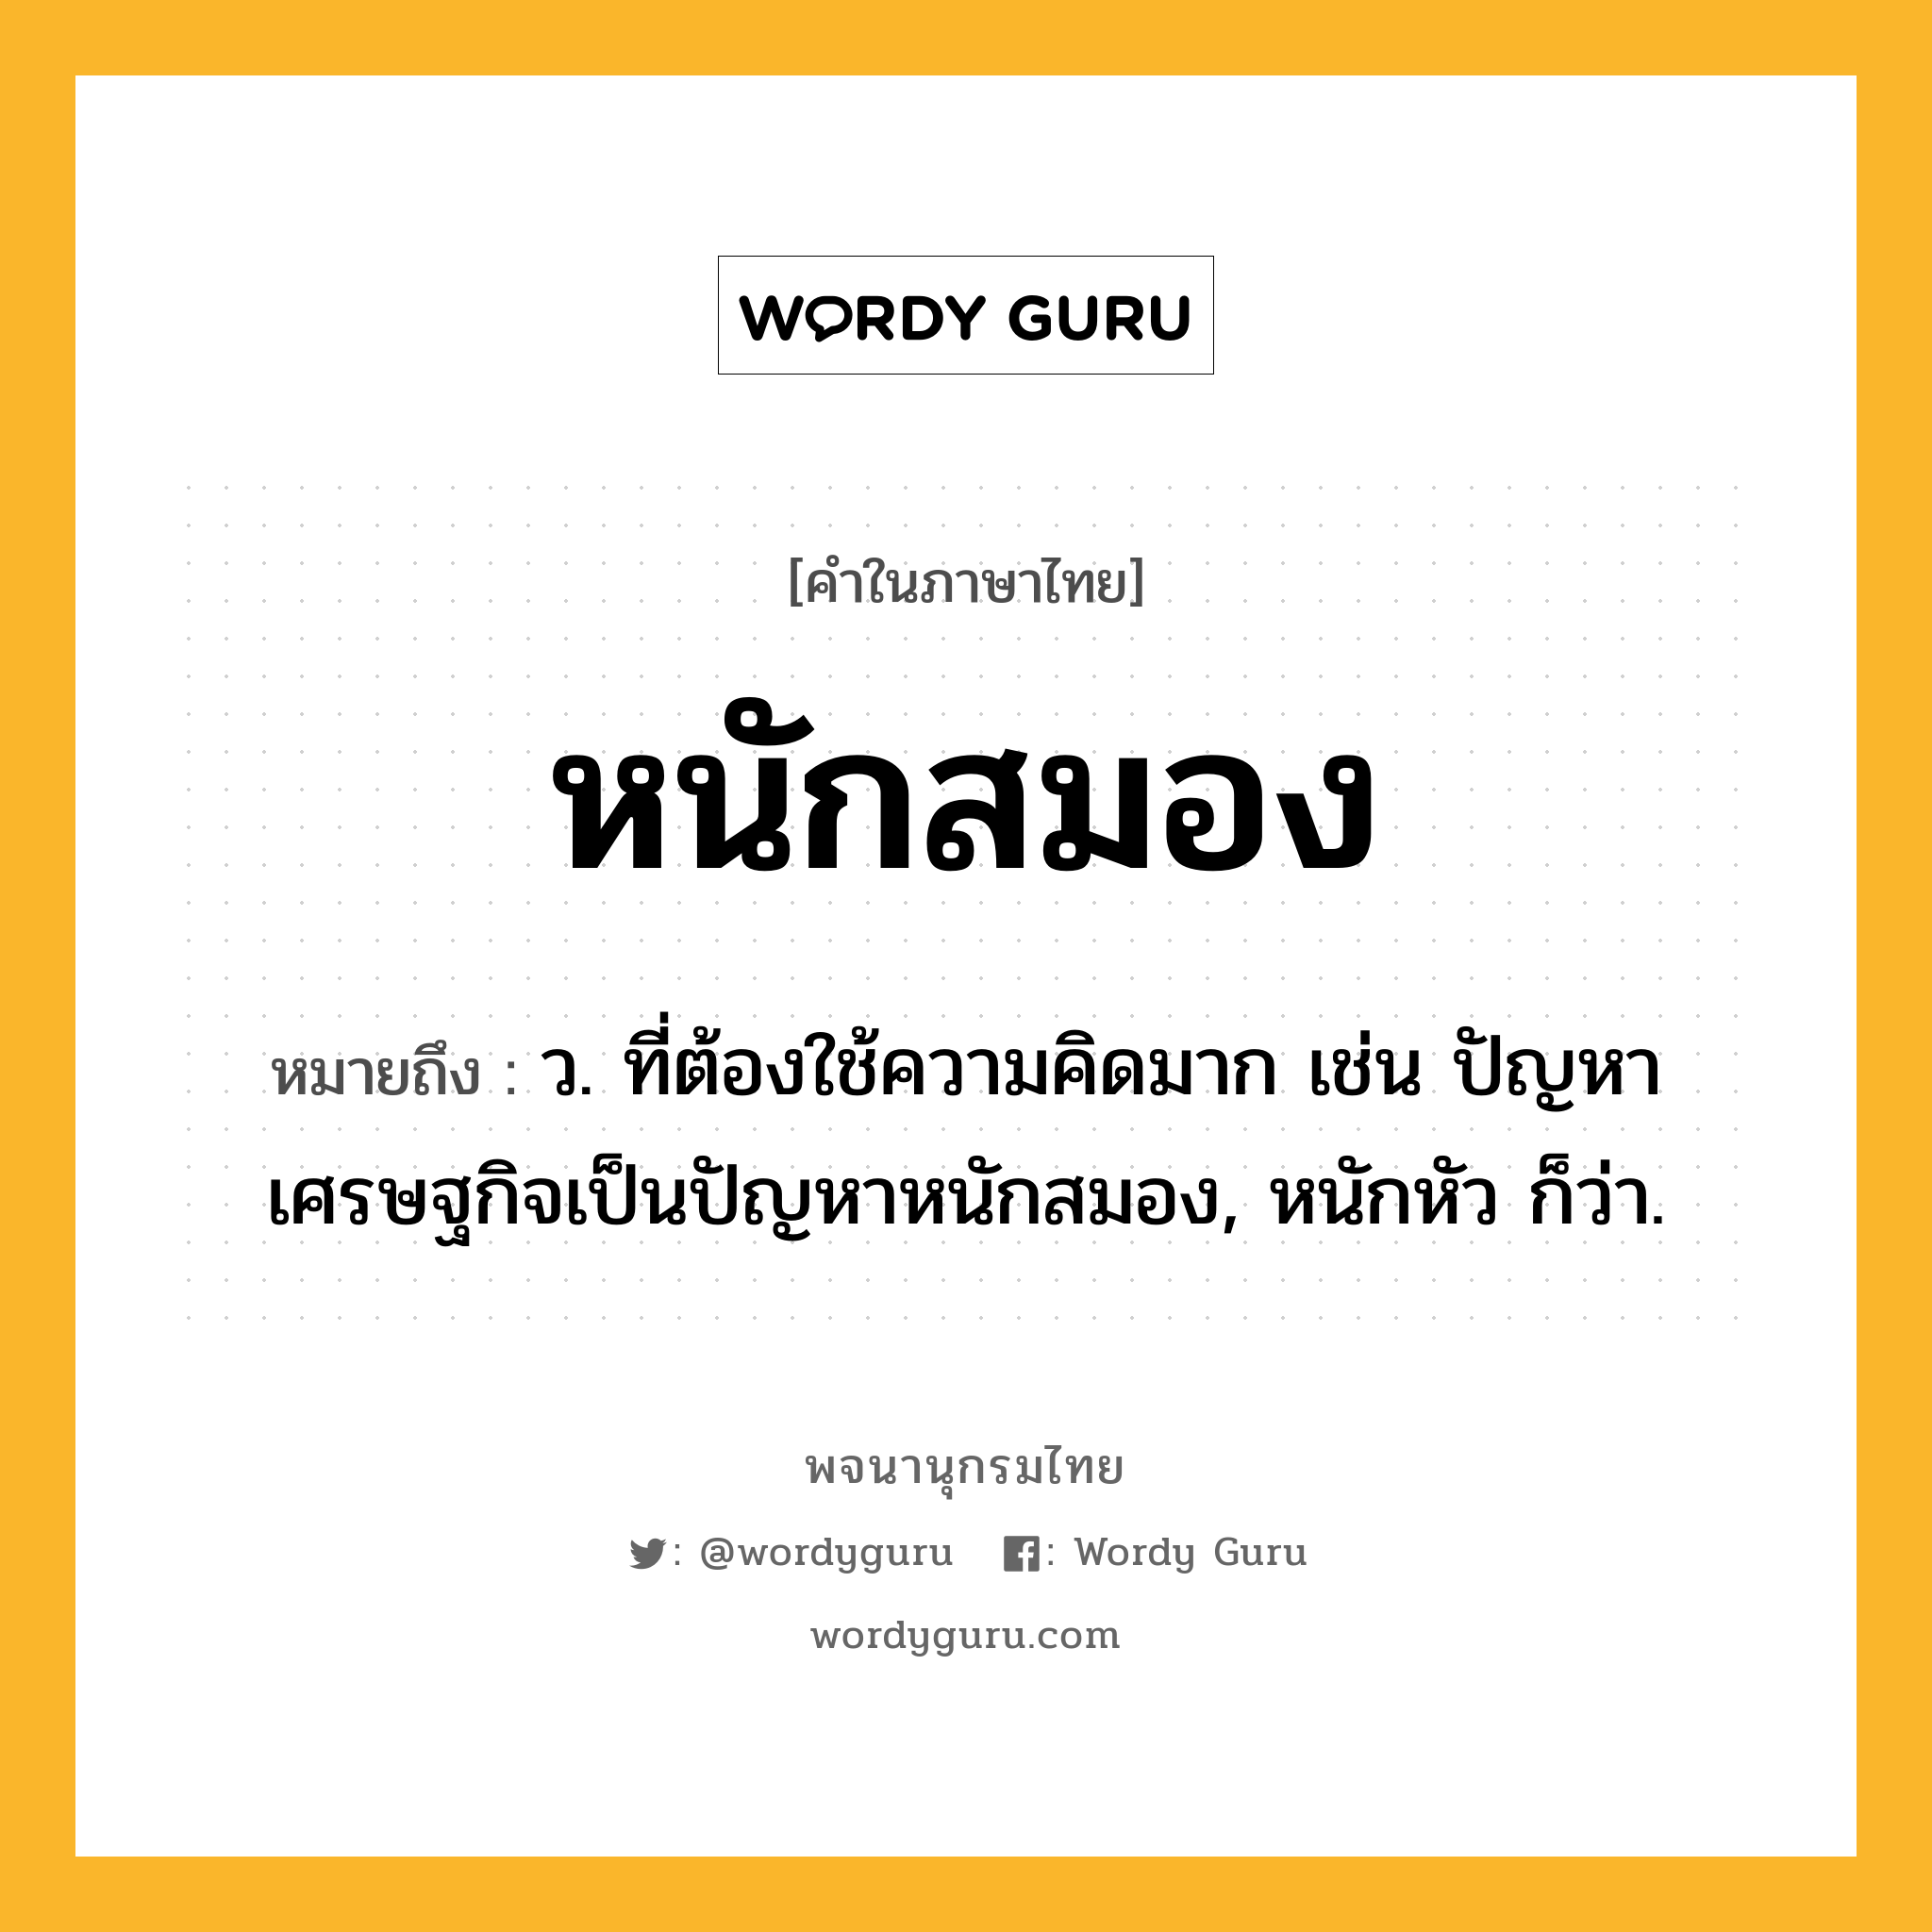 หนักสมอง ความหมาย หมายถึงอะไร?, คำในภาษาไทย หนักสมอง หมายถึง ว. ที่ต้องใช้ความคิดมาก เช่น ปัญหาเศรษฐกิจเป็นปัญหาหนักสมอง, หนักหัว ก็ว่า.